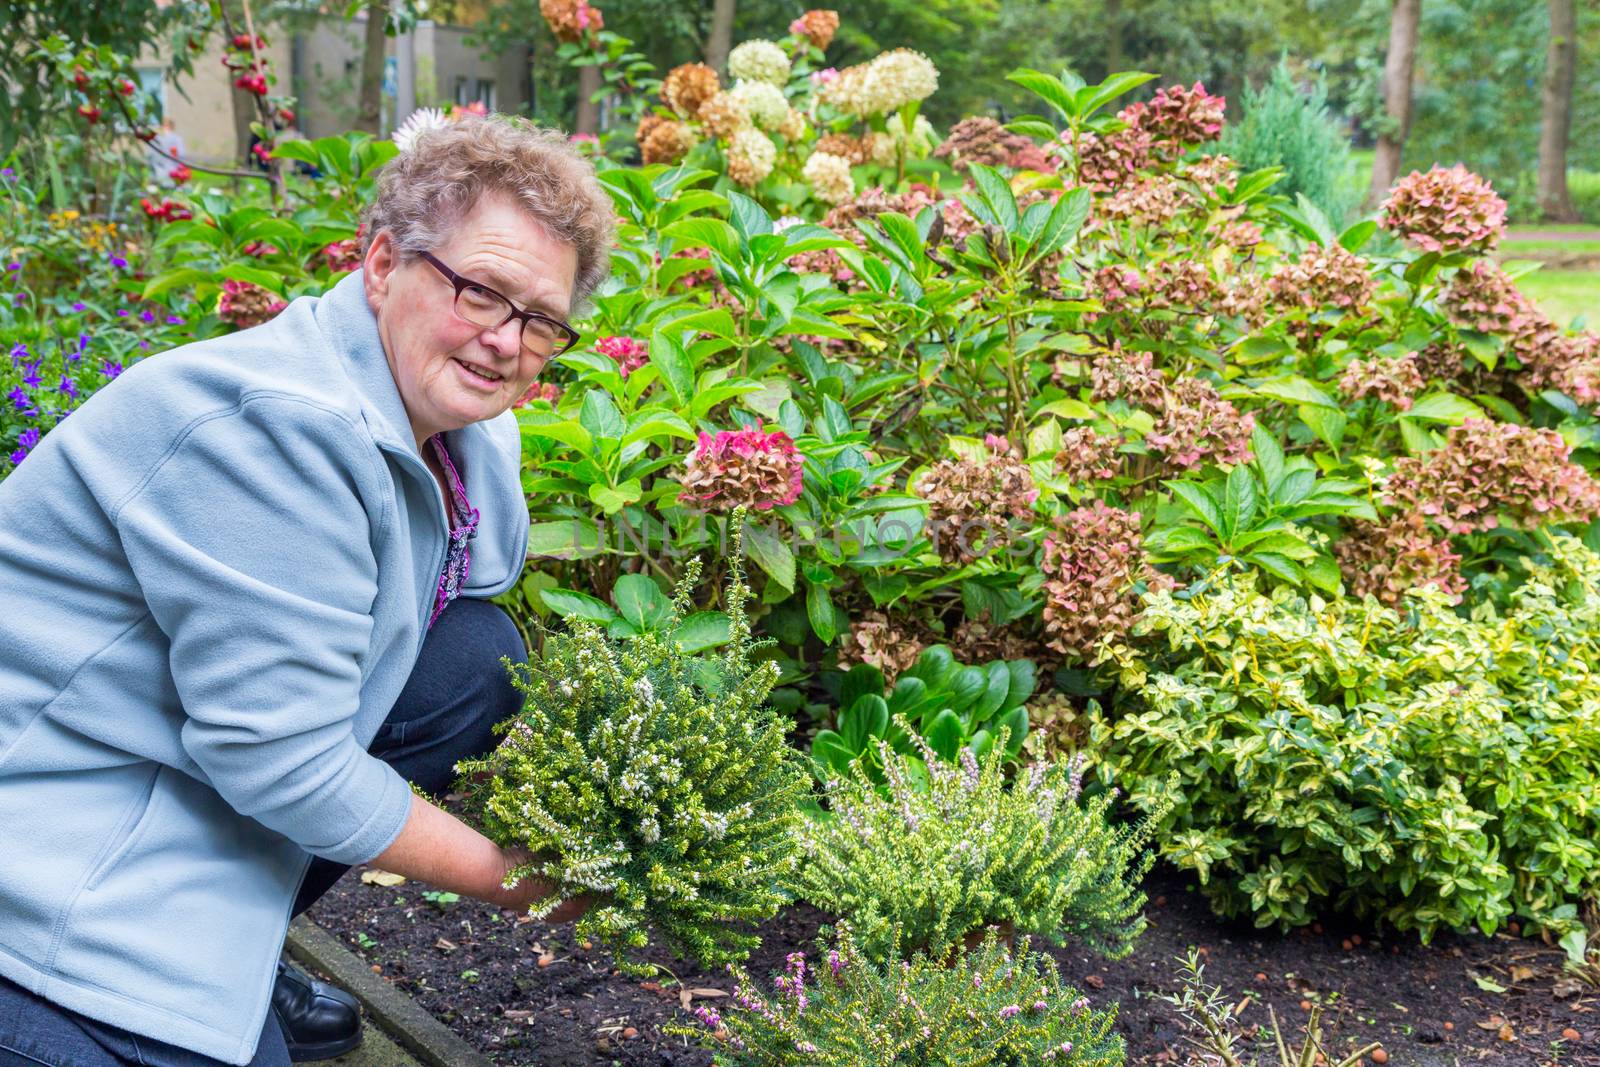 Elderly woman planting heather in garden by BenSchonewille